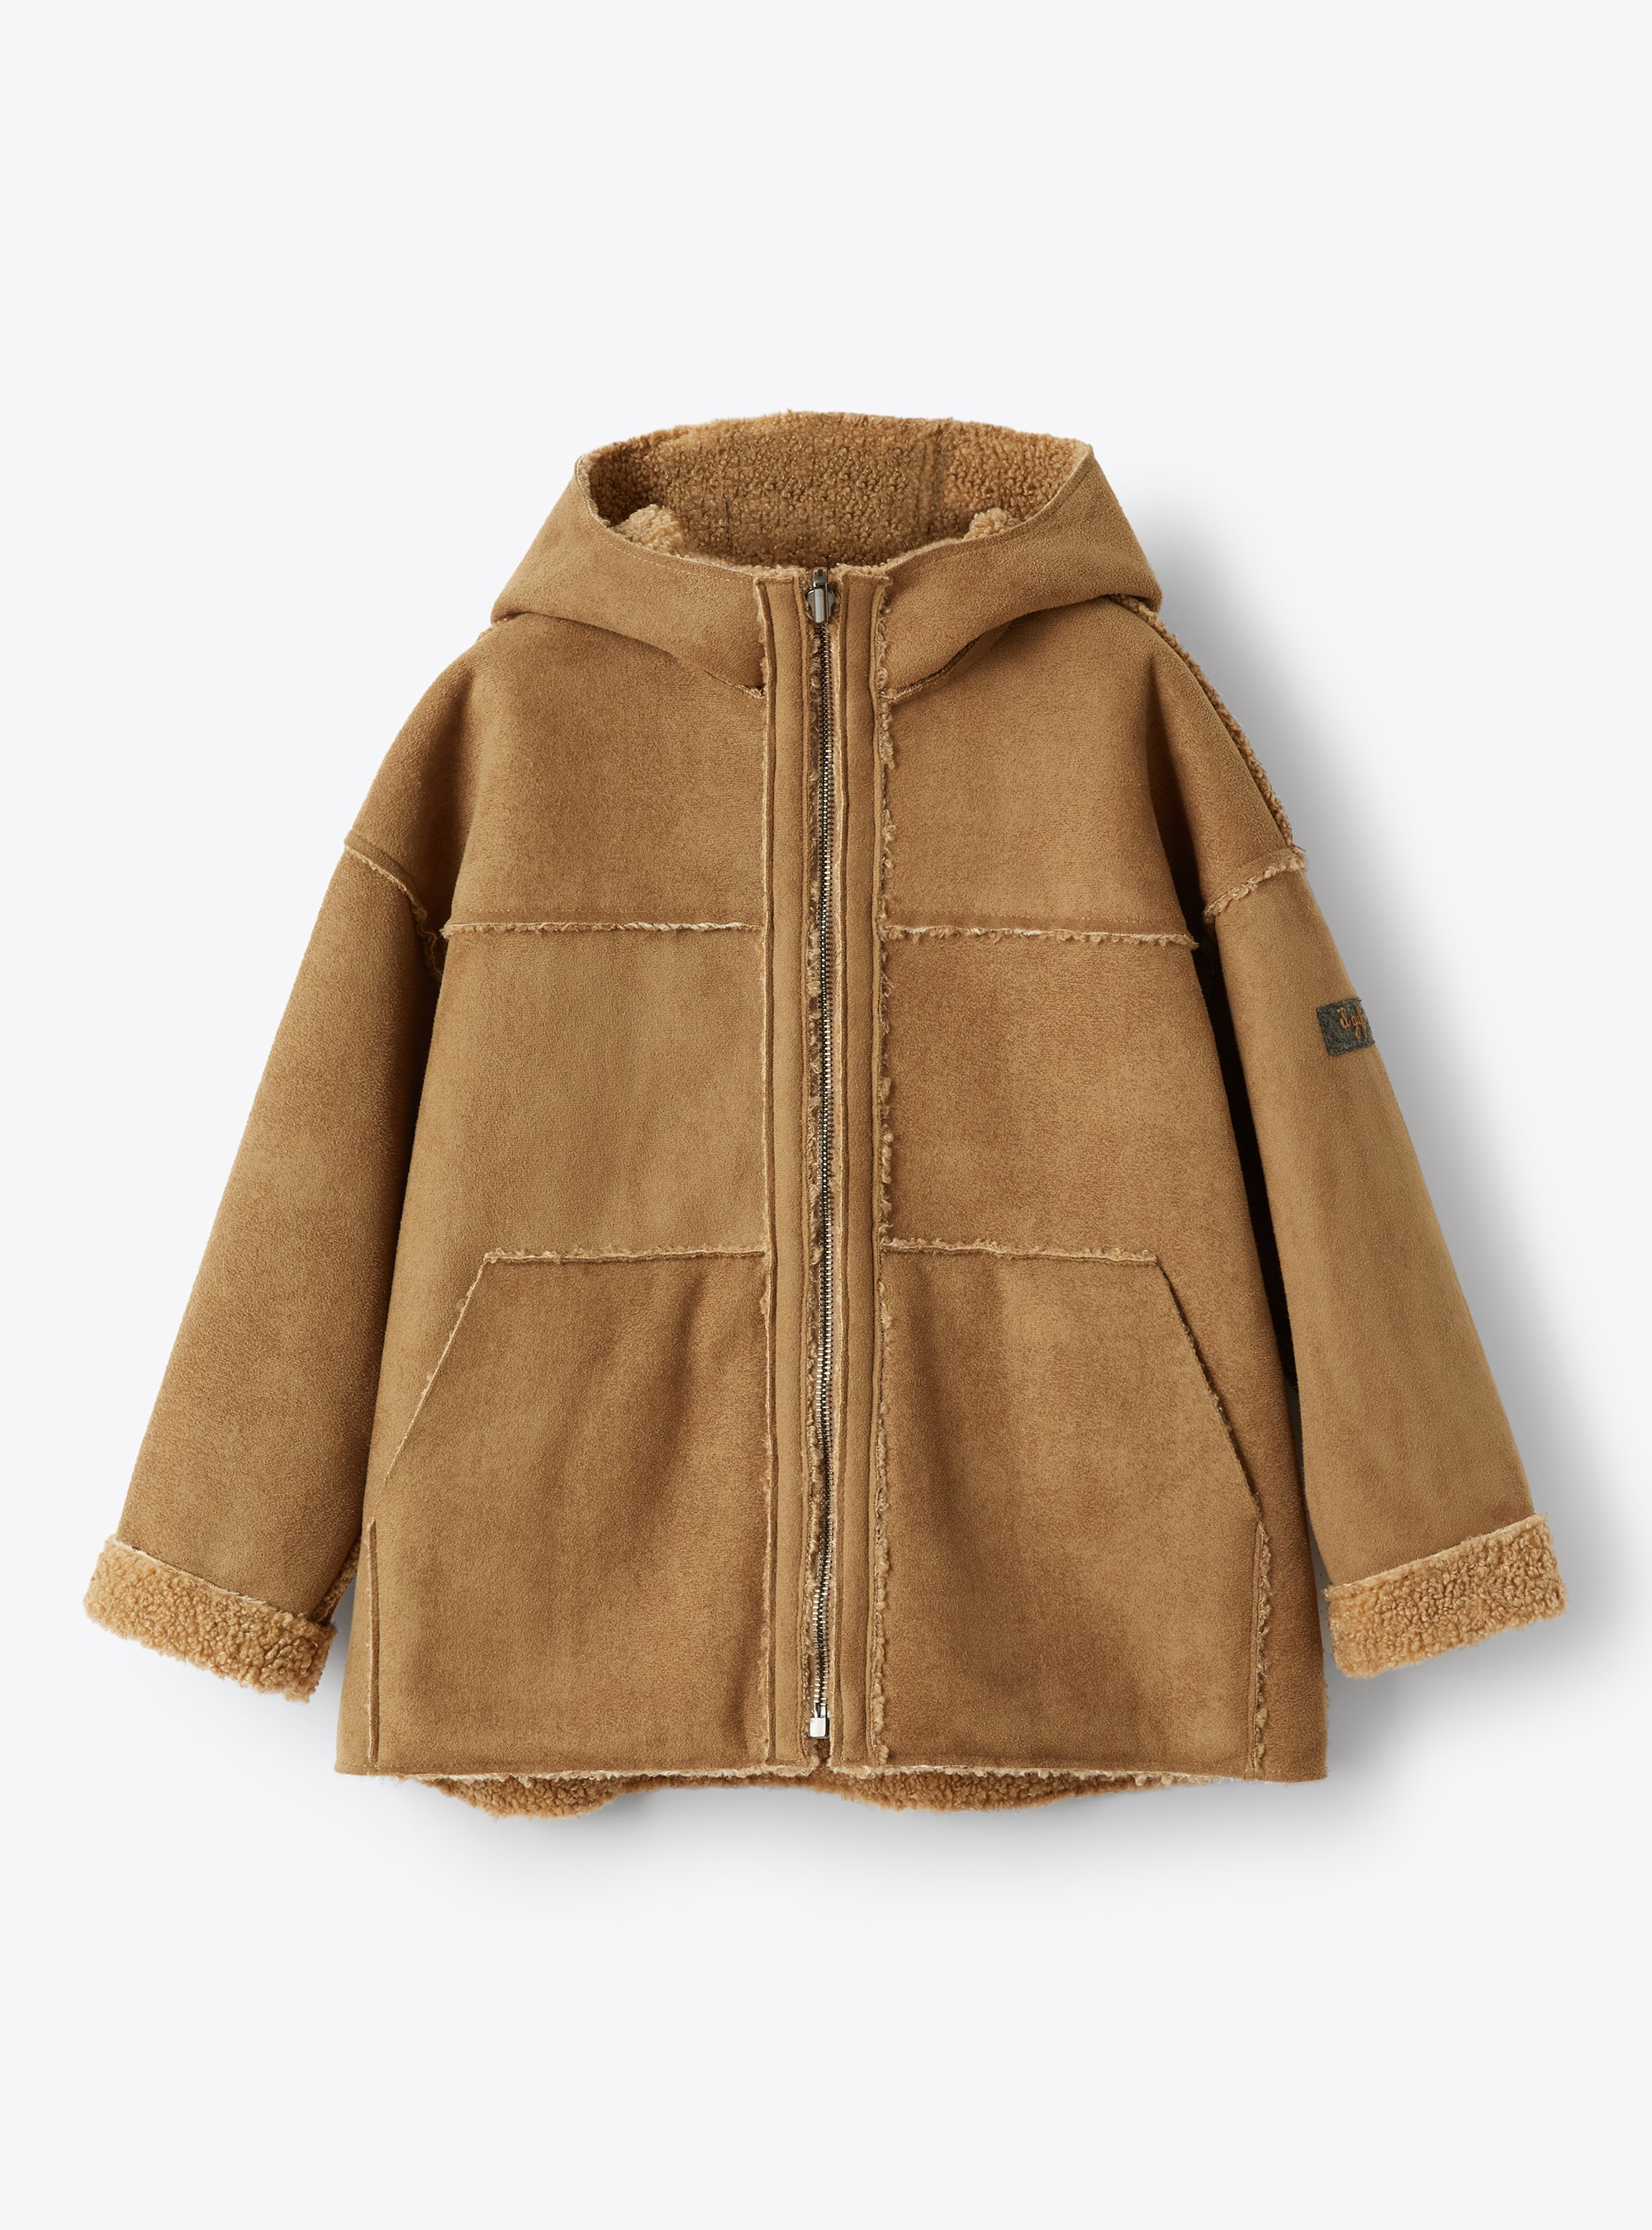 Manteau en peau lainée synthétique réversible - Manteaux - Il Gufo